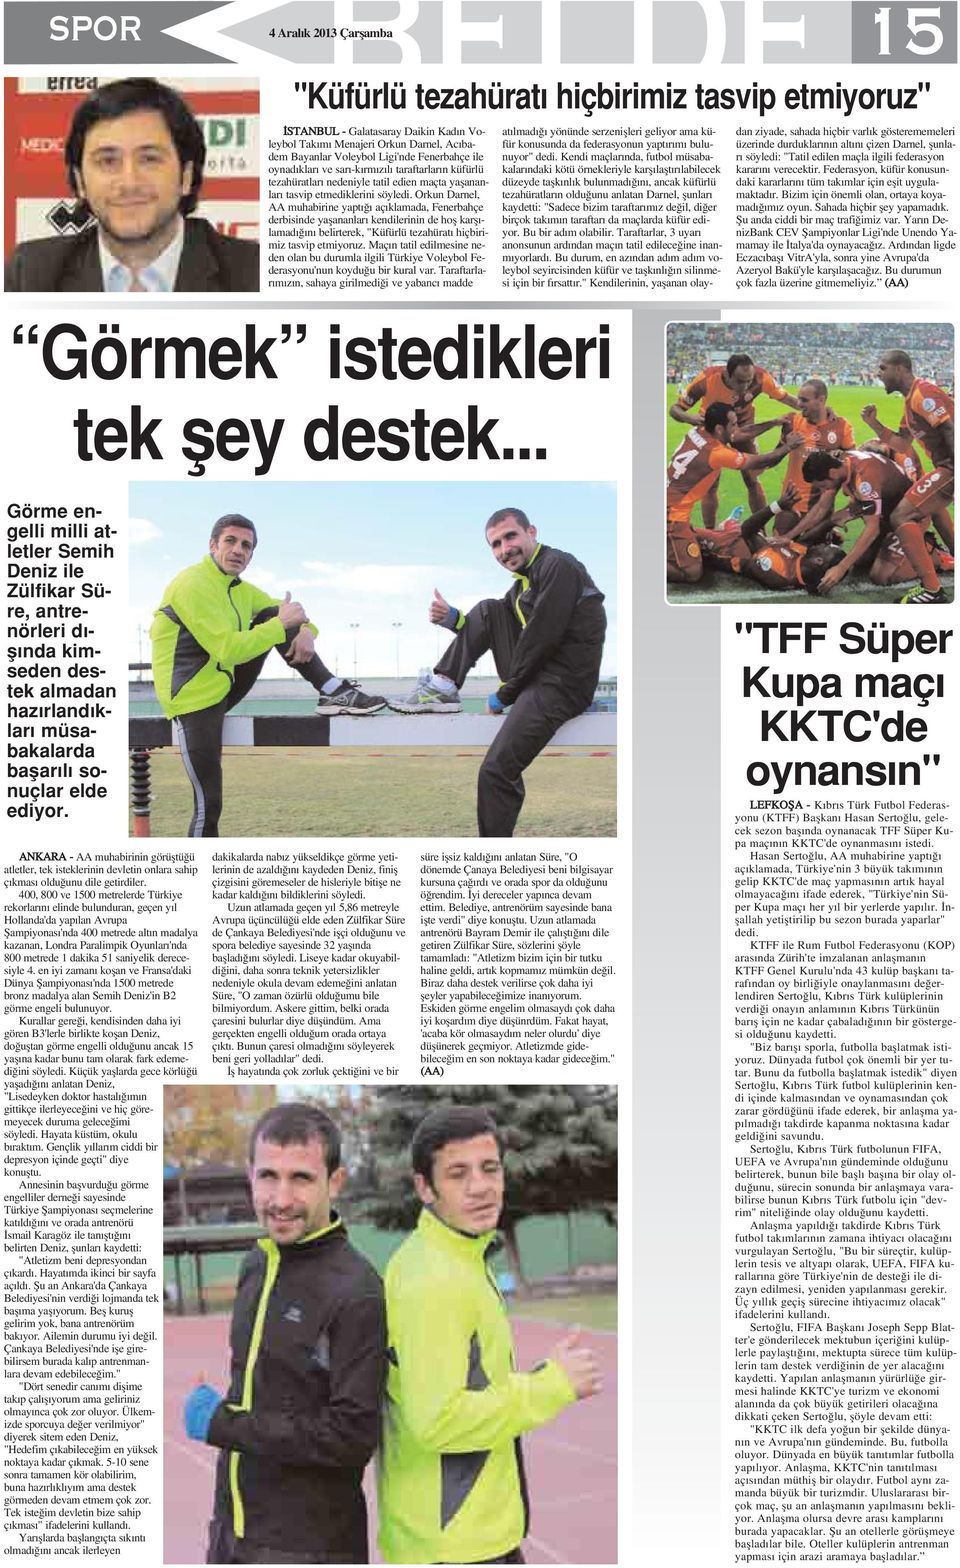 Orkun Darnel, AA muhabirine yapt aç klamada, Fenerbahçe derbisinde yaflananlar kendilerinin de hofl karfl - lamad n belirterek, "Küfürlü tezahürat hiçbirimiz tasvip etmiyoruz.